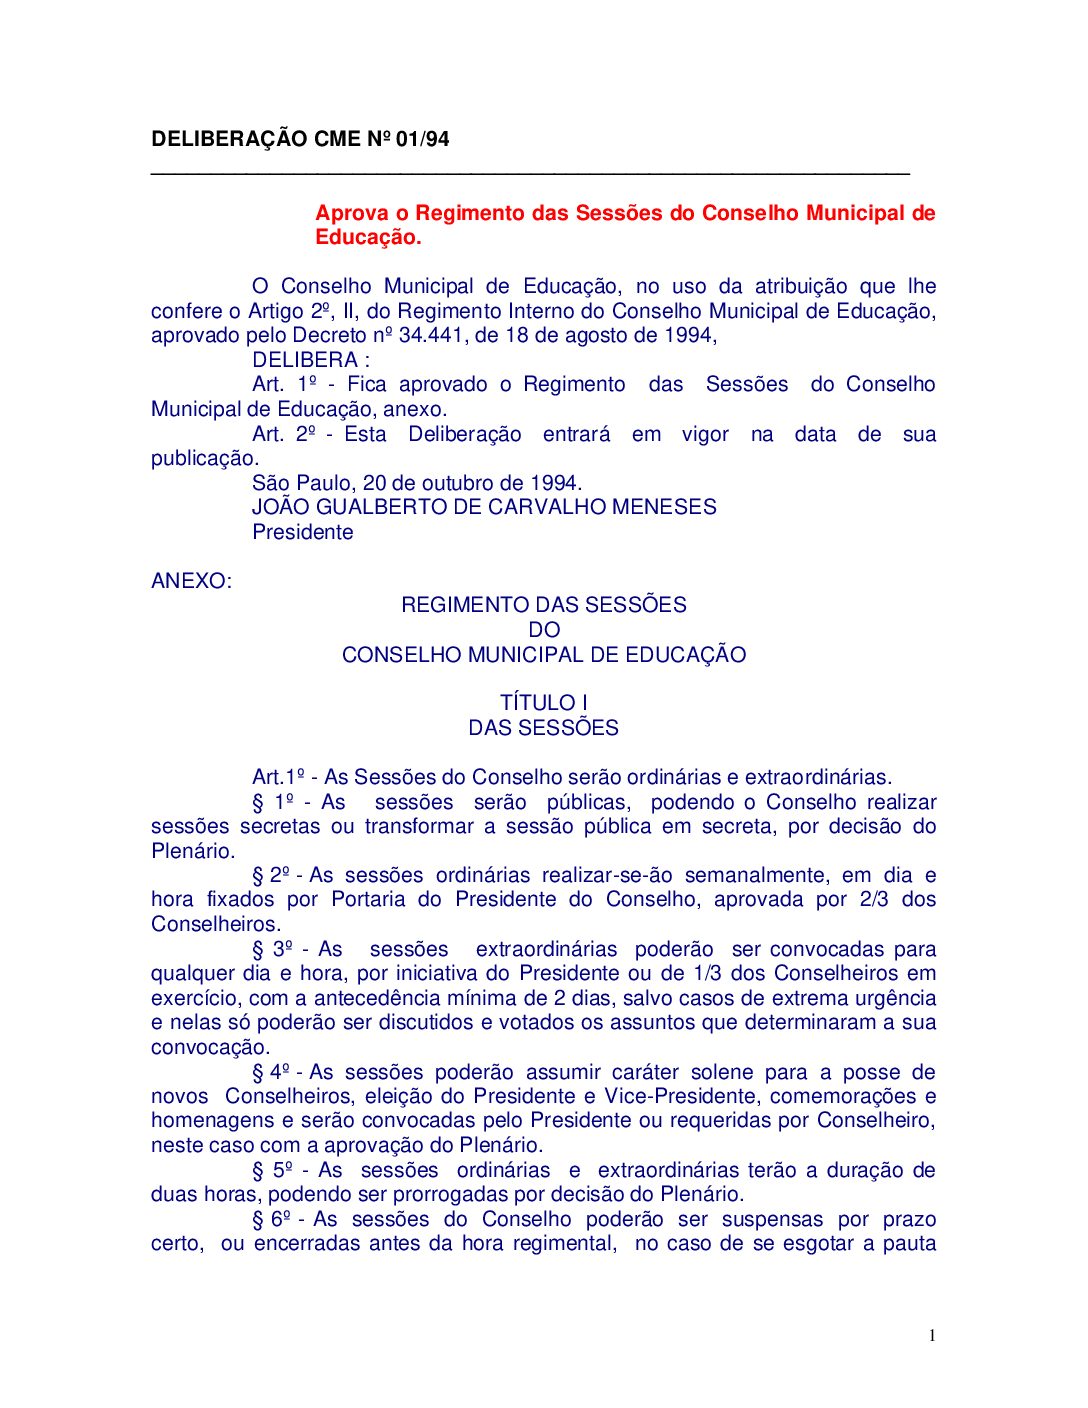 Deliberação CME nº 01/1994 - Aprova o Regimento das Sessões do Conselho Municipal de Educação